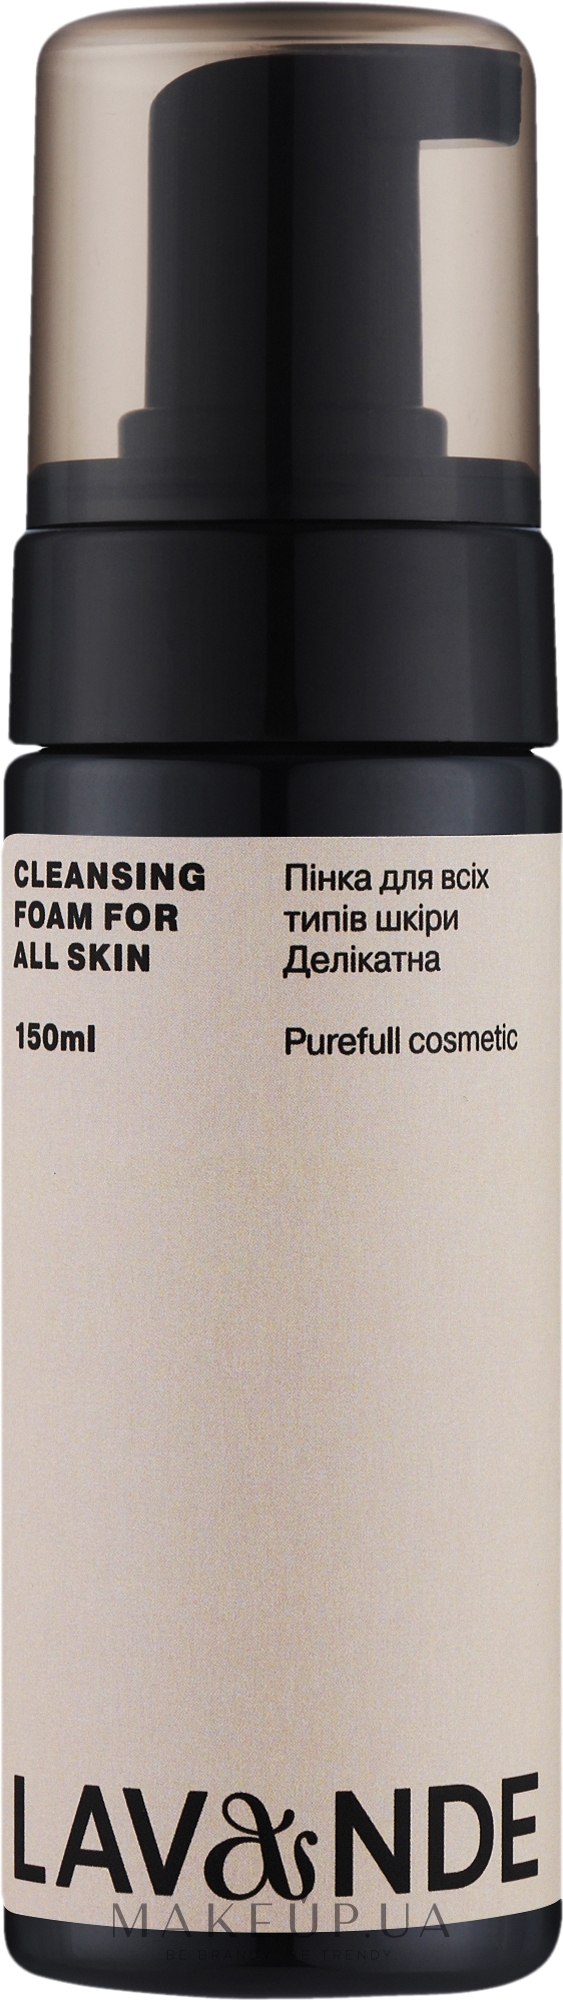 Пінка для всіх типів шкіри "Делікатна" - Lavande Cleansing Foam For All Skin — фото 150ml